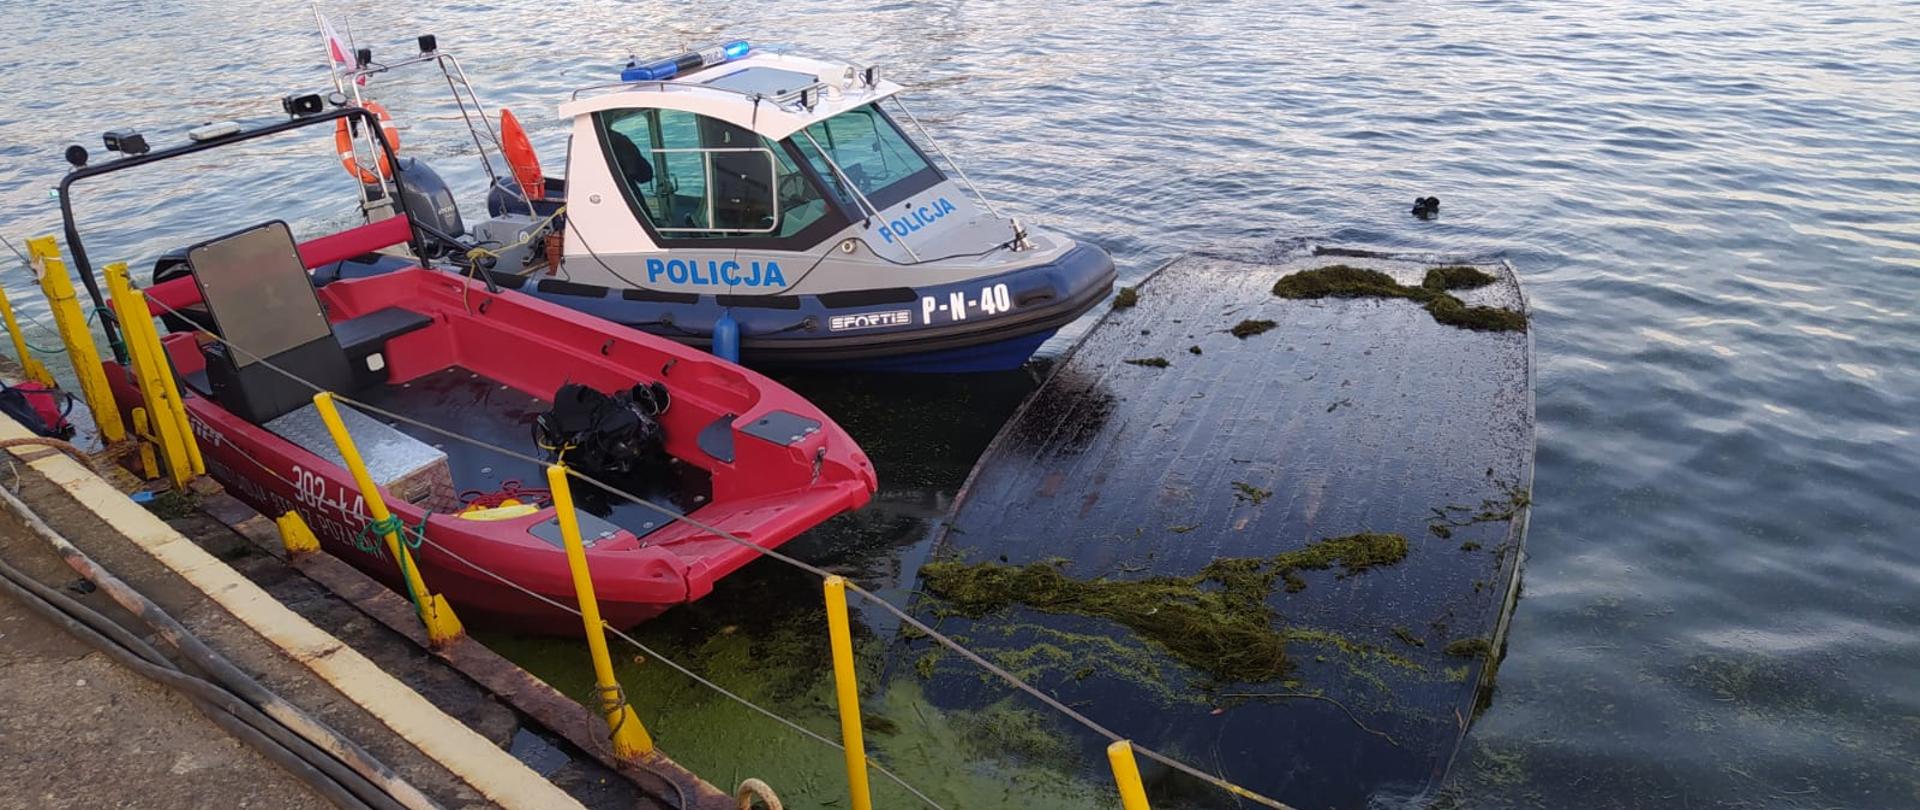 Na wodach Martwej Wisły widać przy nabrzeżu łódź wywróconą do góry dnem oraz łodzie Policji i PSP.